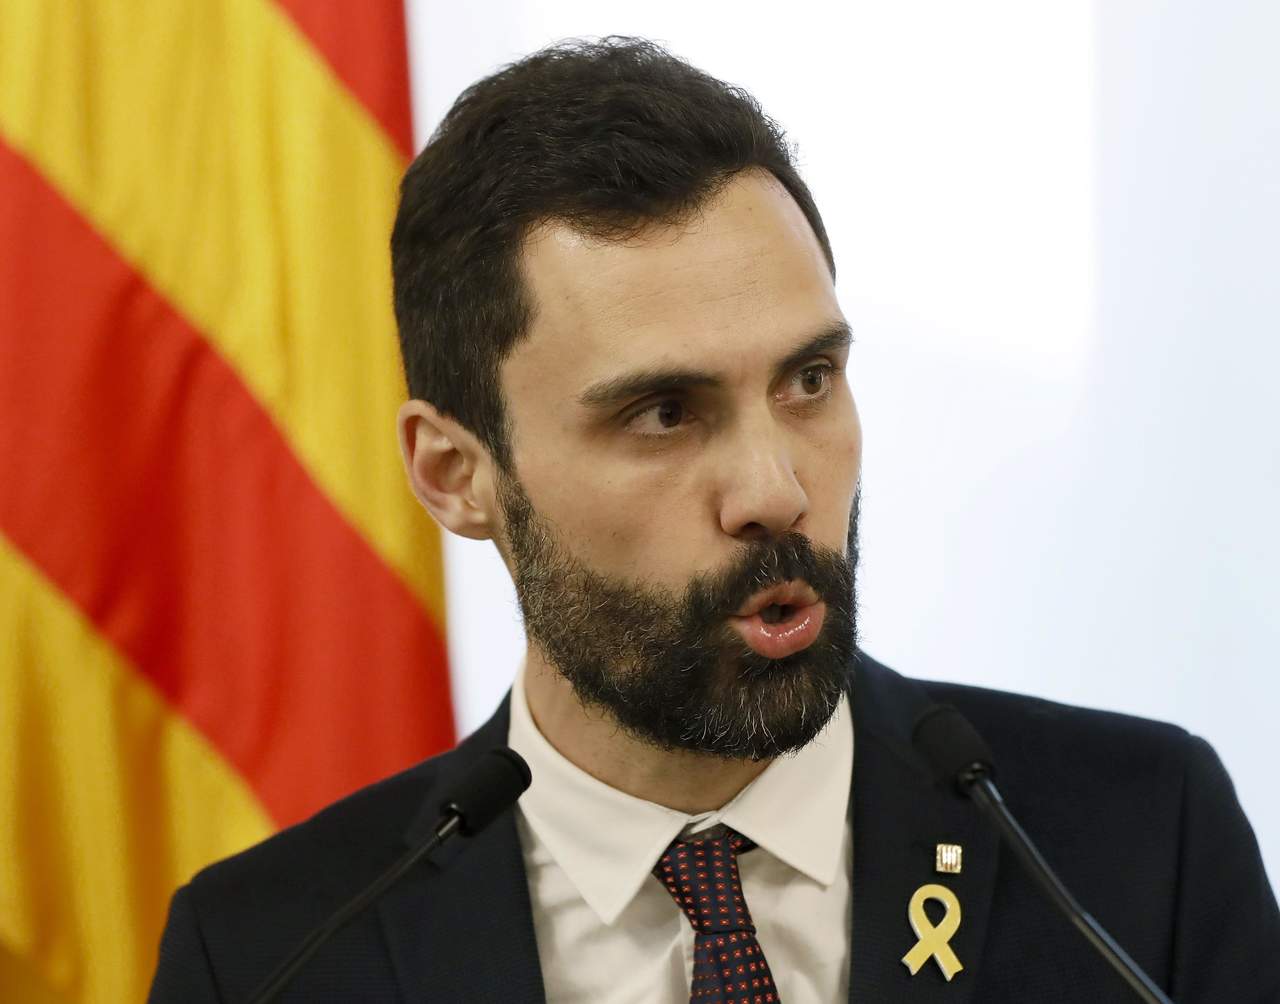 Torrent mantuvo, no obstante, que 'el único candidato' a presidente de Cataluña sigue siendo el independentista Carles Puigdemont, huido de la Justicia española. (ARCHIVO)